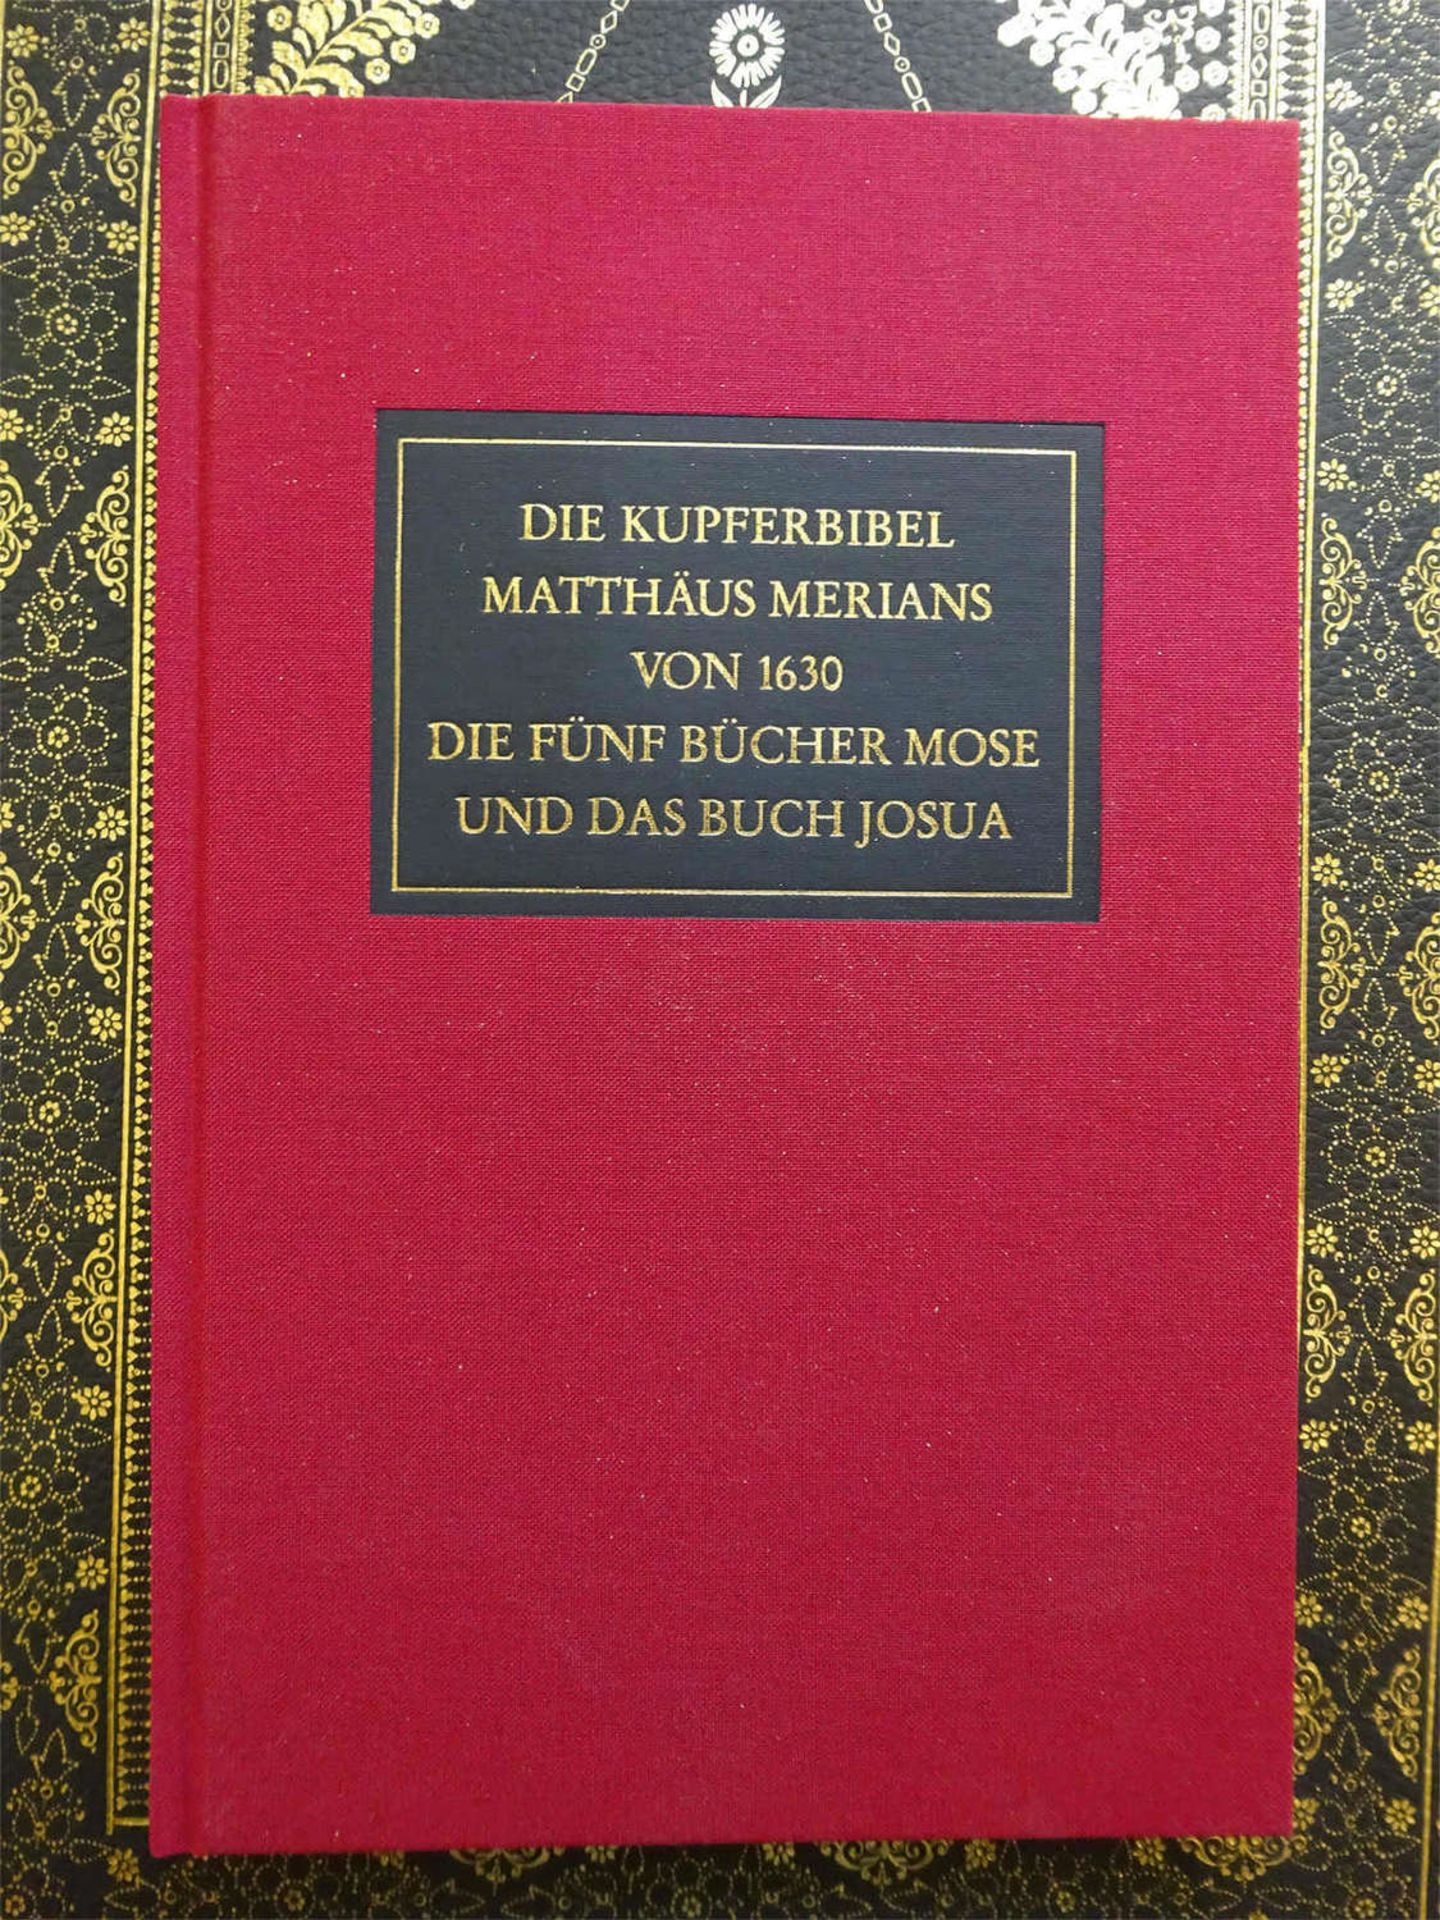 Bibel Matthaus Merian Kuferbibel AT 1630, gekauft für über 1600 €. Faksimile des handkolorierten - Bild 2 aus 3